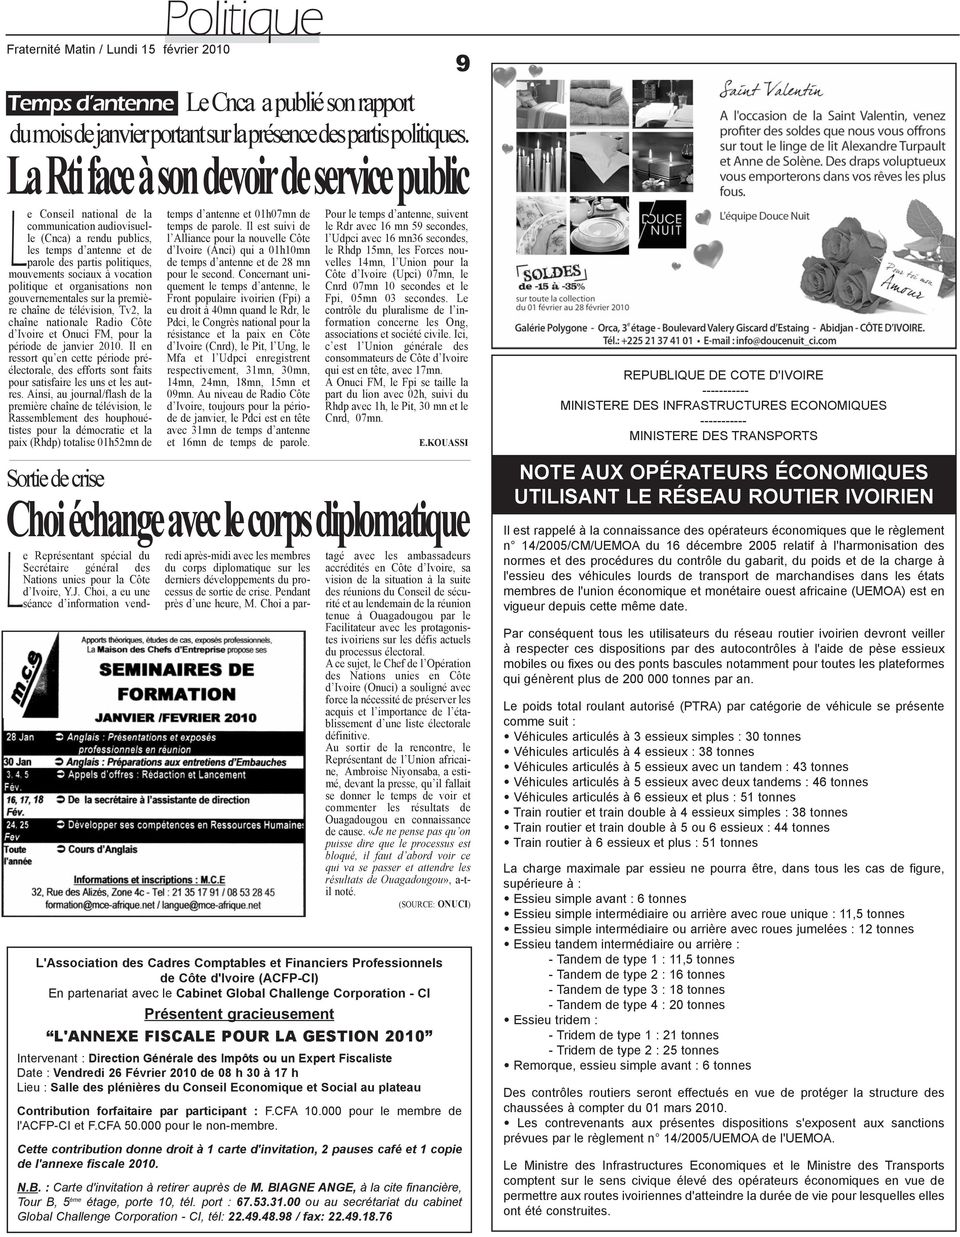 vocation politique et organisations non gouvernementales sur la première chaîne de télévision, Tv2, la chaîne nationale Radio Côte d Ivoire et Onuci FM, pour la période de janvier 2010.